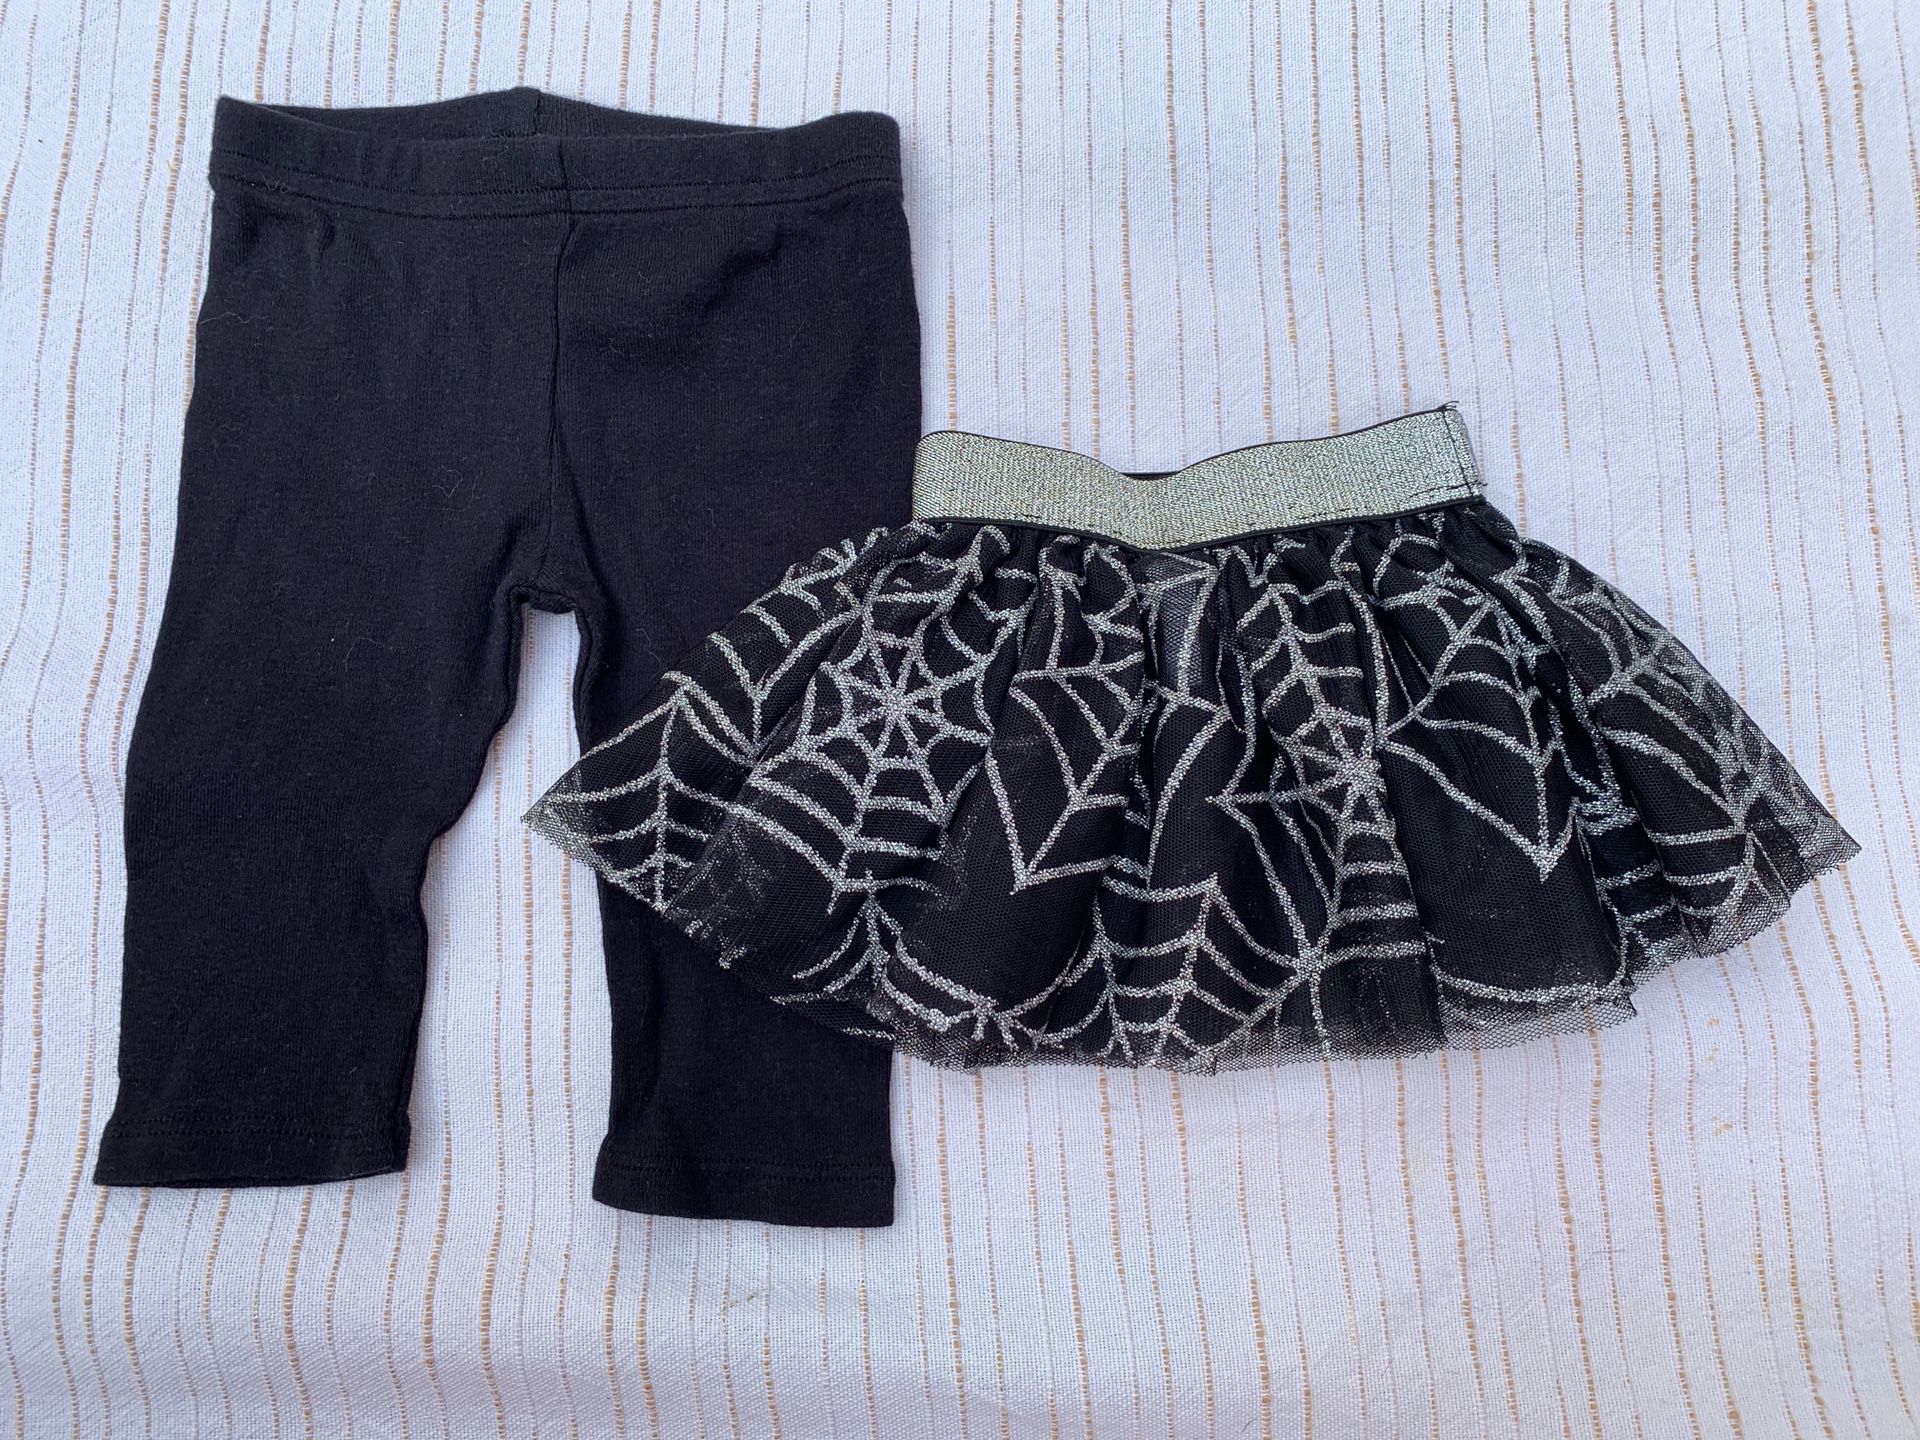 Baby girls size 0/3 months 🕷 spider 🕸 spiderweb 2 piece lot black organic cotton leggings